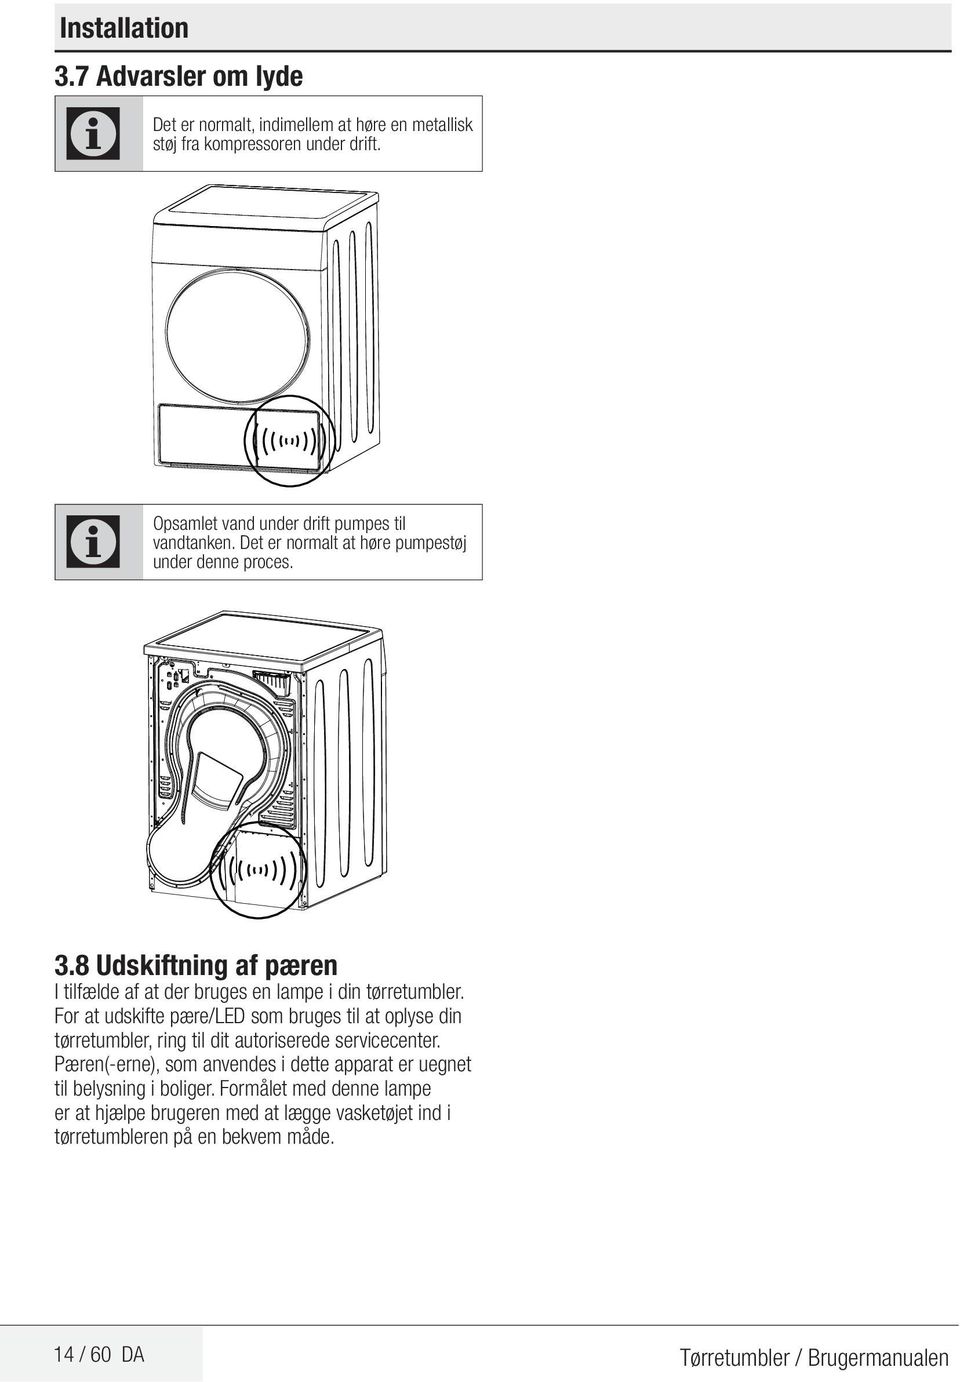 8 Udskiftning af pæren I tilfælde af at der bruges en lampe i din tørretumbler.